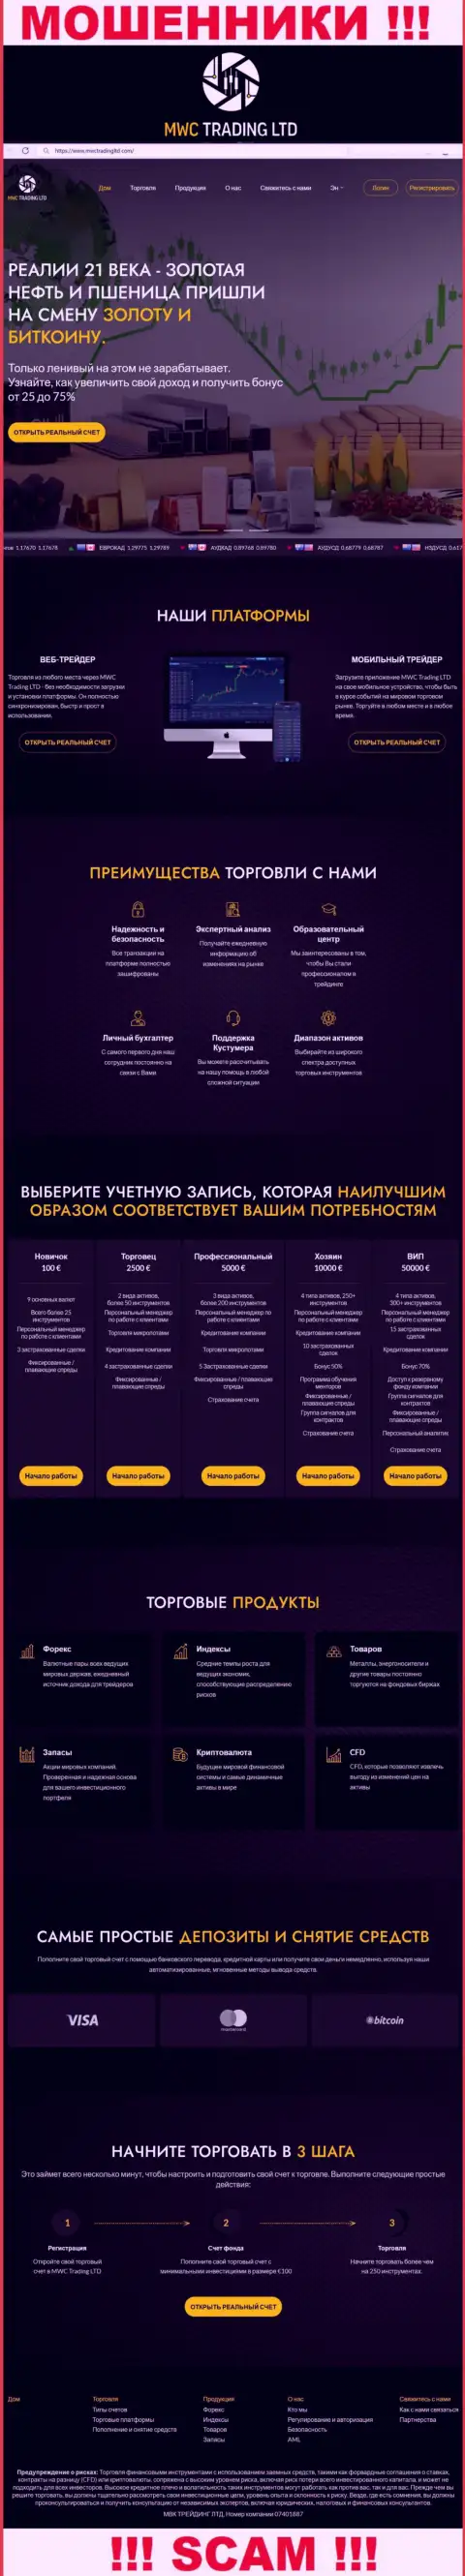 Скрин официального ресурса жульнической конторы МВСТрейдингЛтд